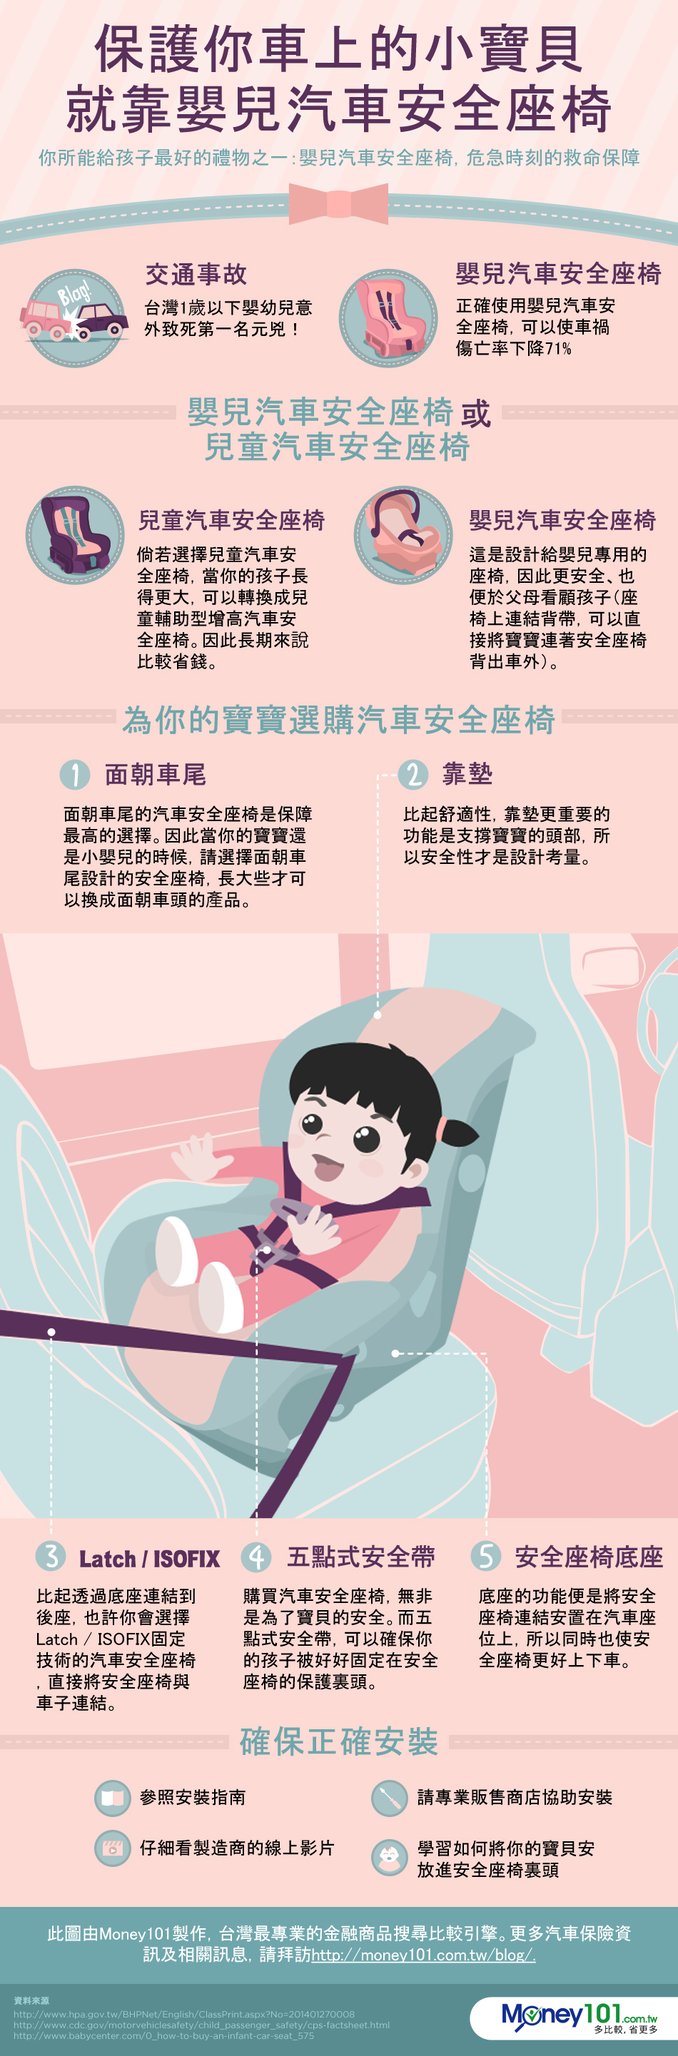 保護你車上的小寶貝 就靠嬰兒汽車安全座椅